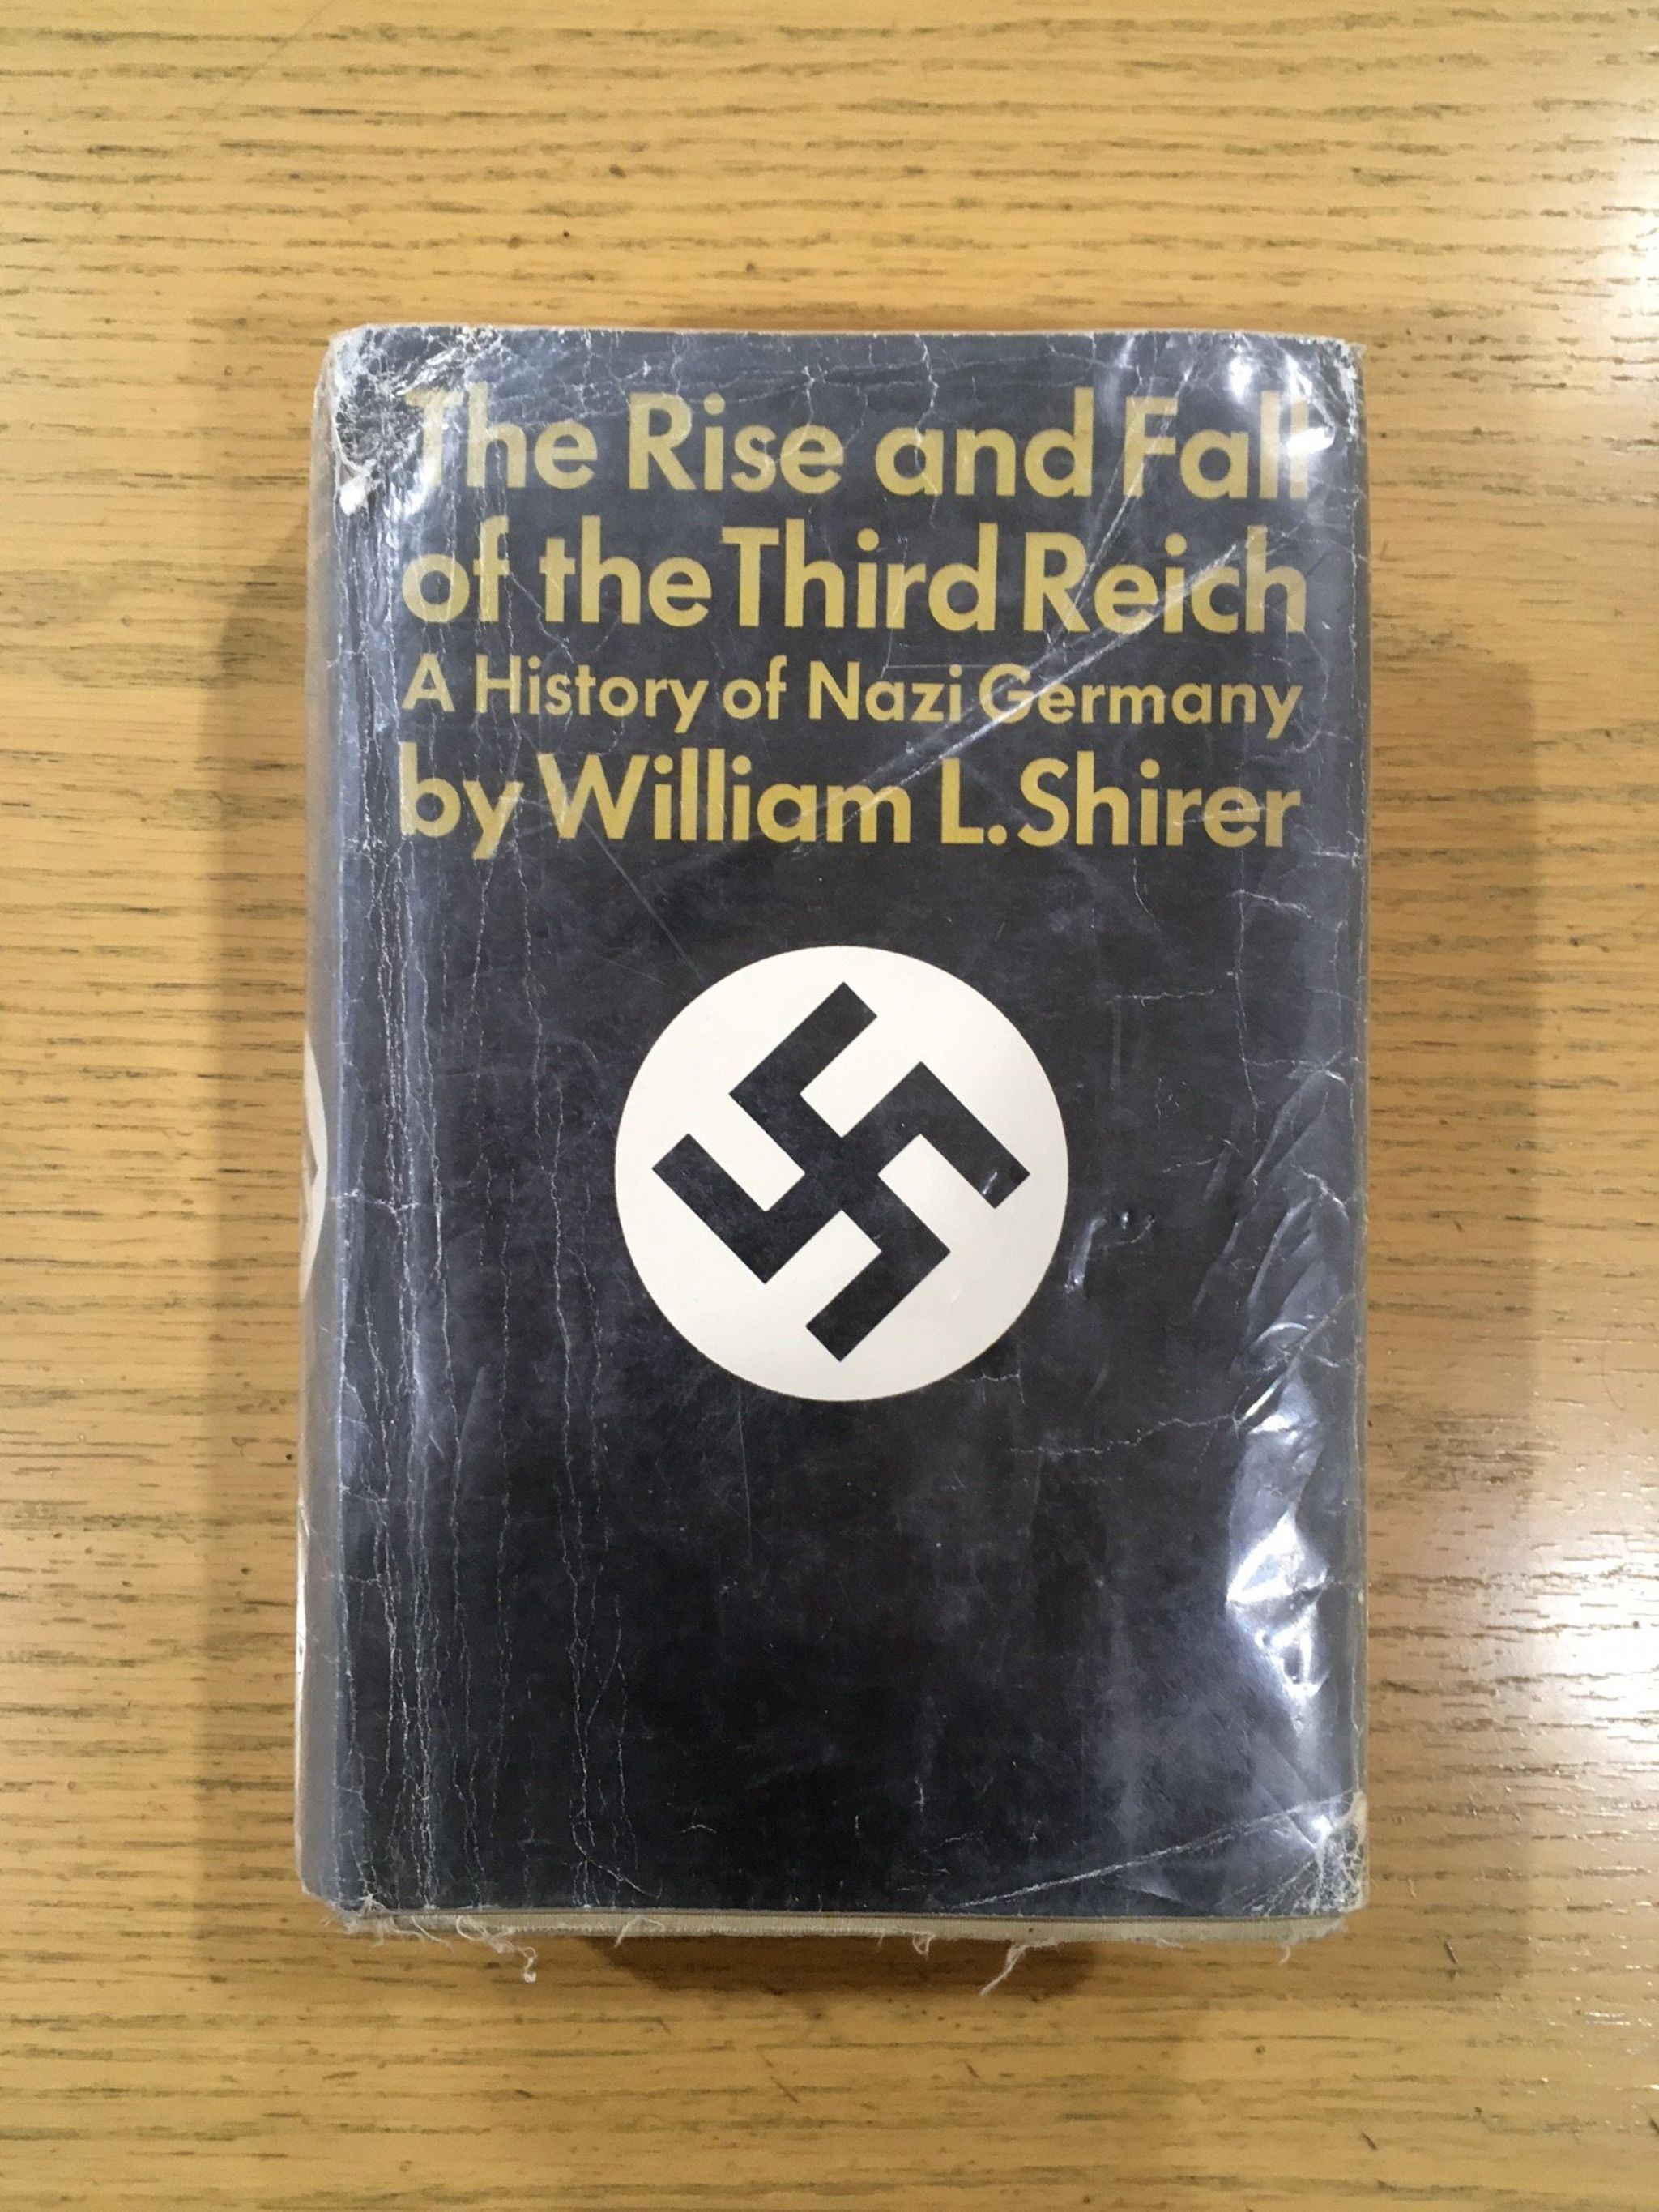 El libro trata sobre el régimen nazi instaurado por Adolfo Hitler en Alemania, de 1933 hasta 1945.